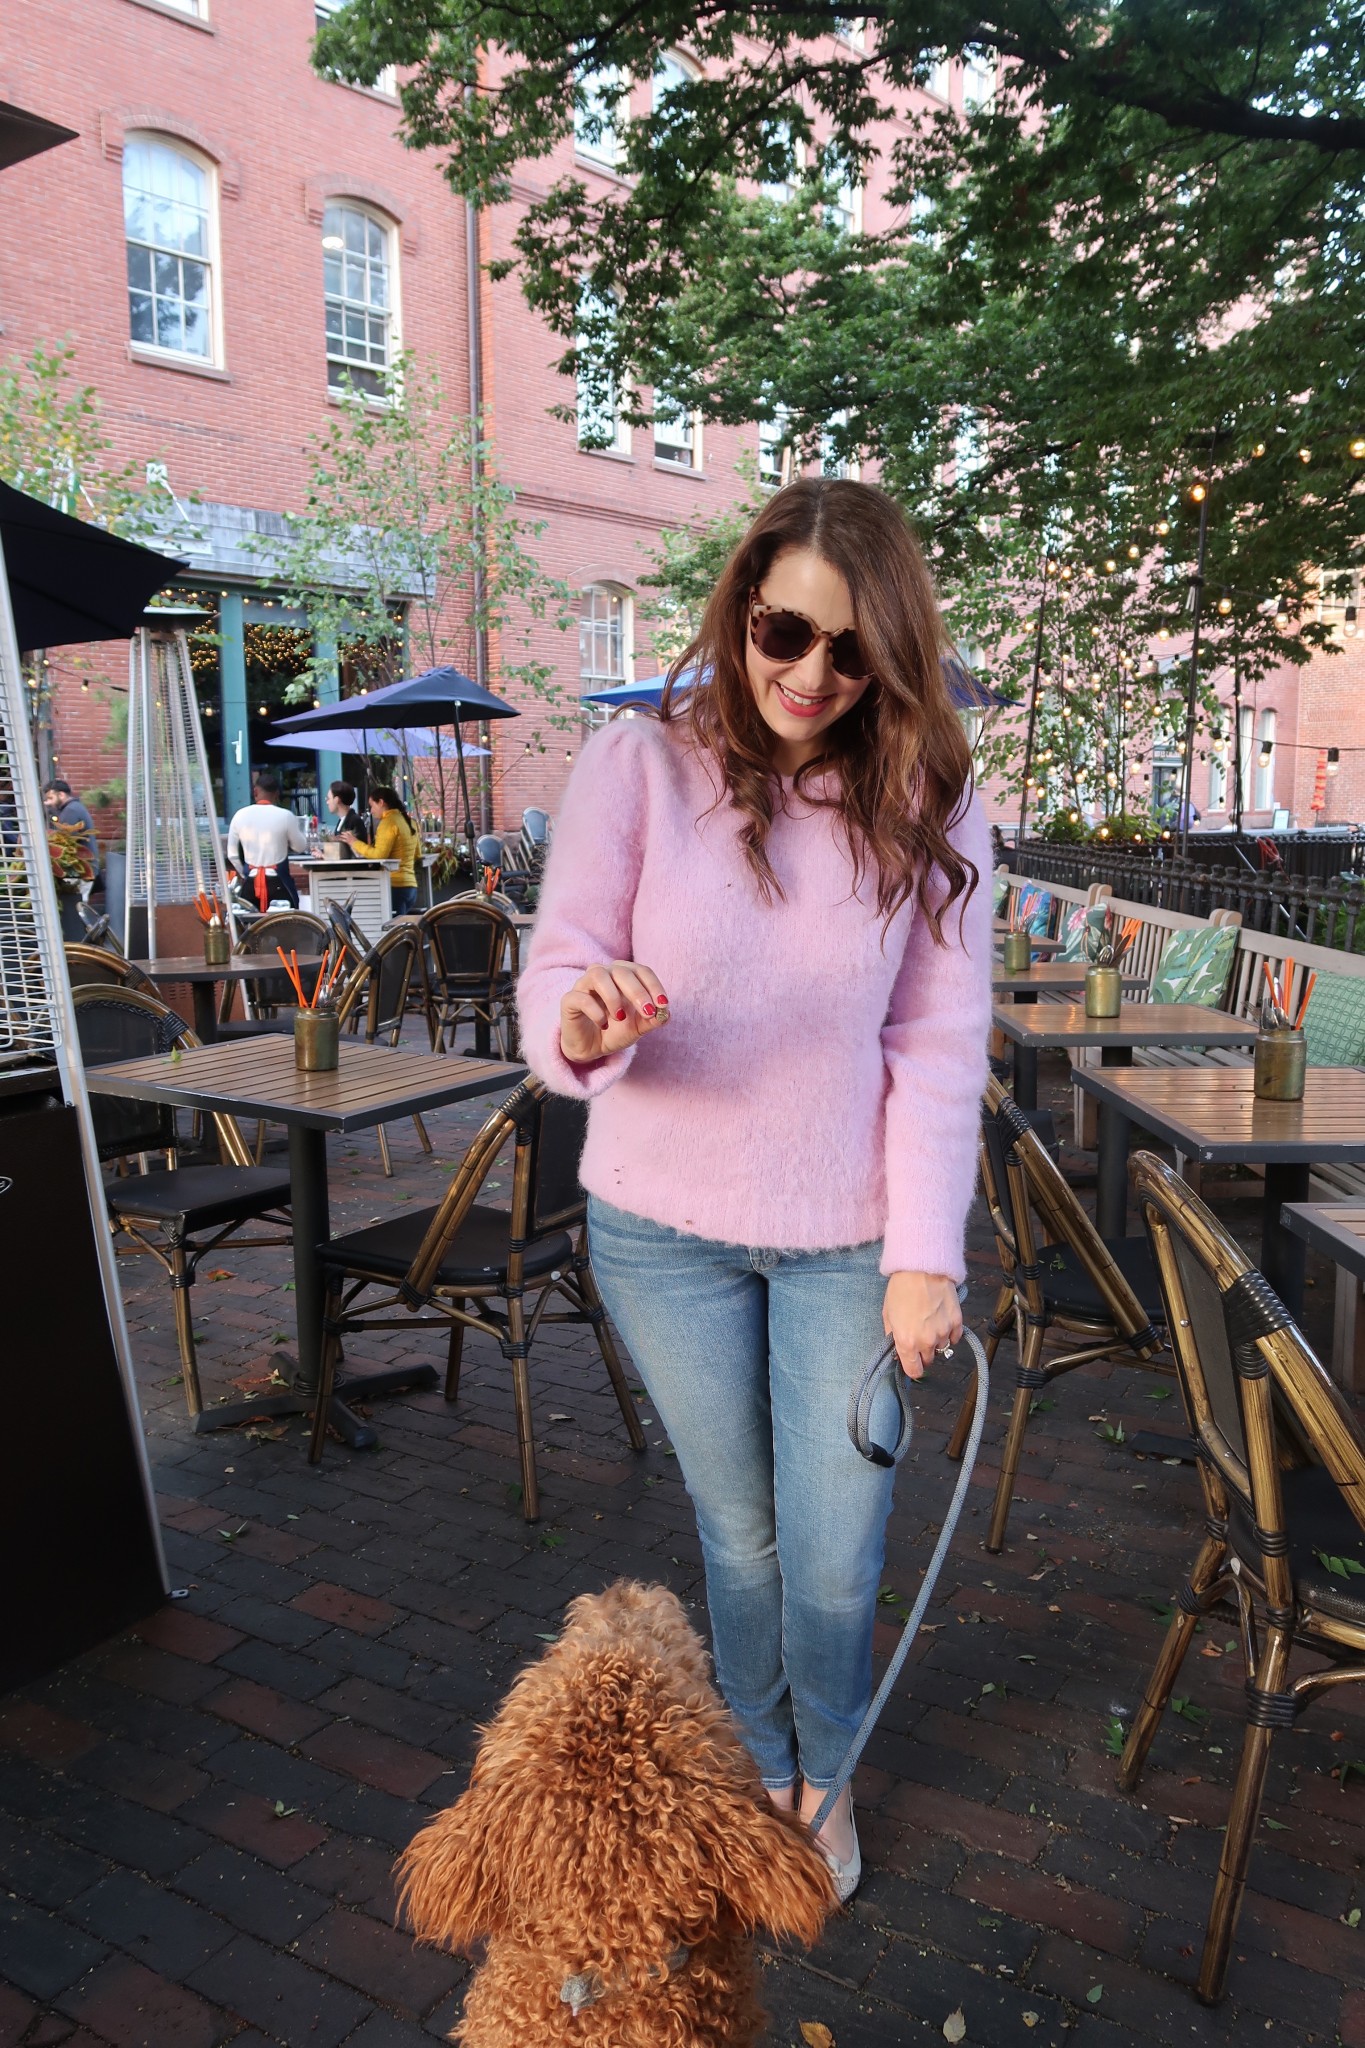 dog friendly patios in boston, the-alyst.com